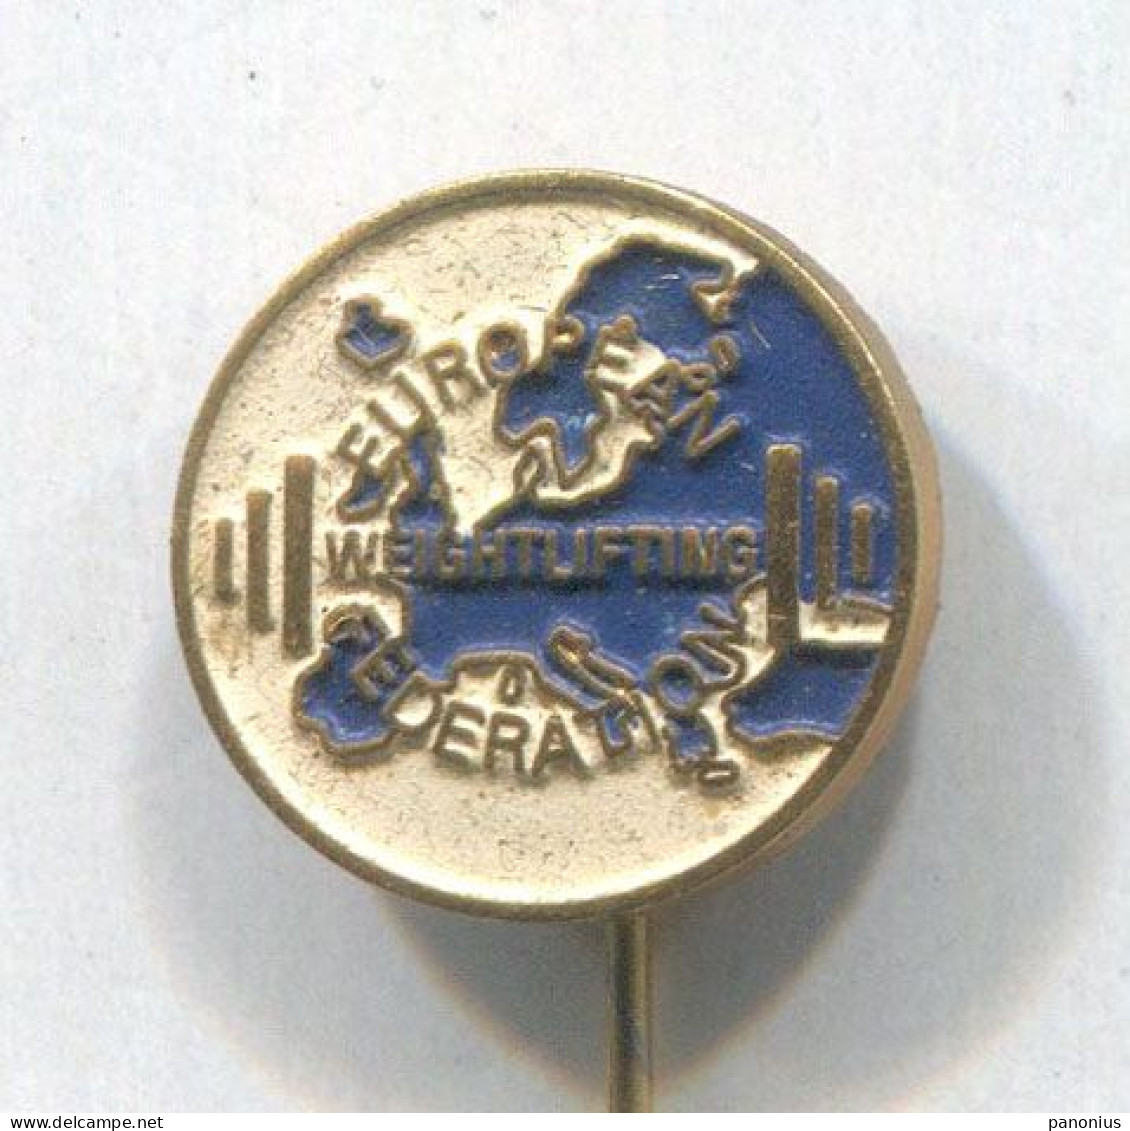 Weightlifting Gewichtheben - European Federation Association, Vintage Pin, Badge, Abzeichen - Weightlifting